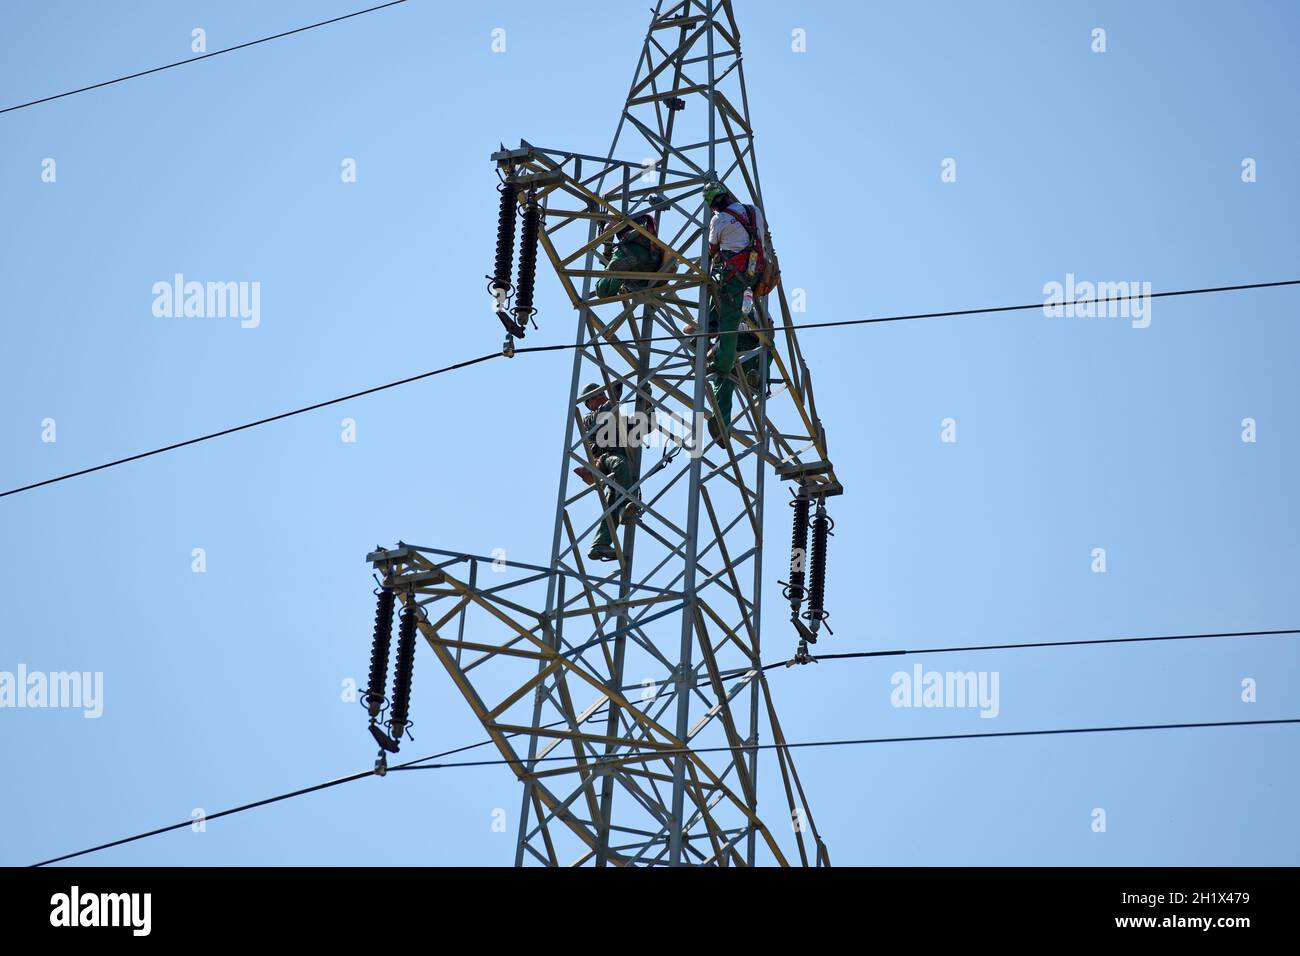 Arbeiter auf einem Hochspannungsmast, Oberösterreich, Österreich, Europa - Trabajadores en un pilón de alta tensión, Alta Austria, Austria, Europa Foto de stock